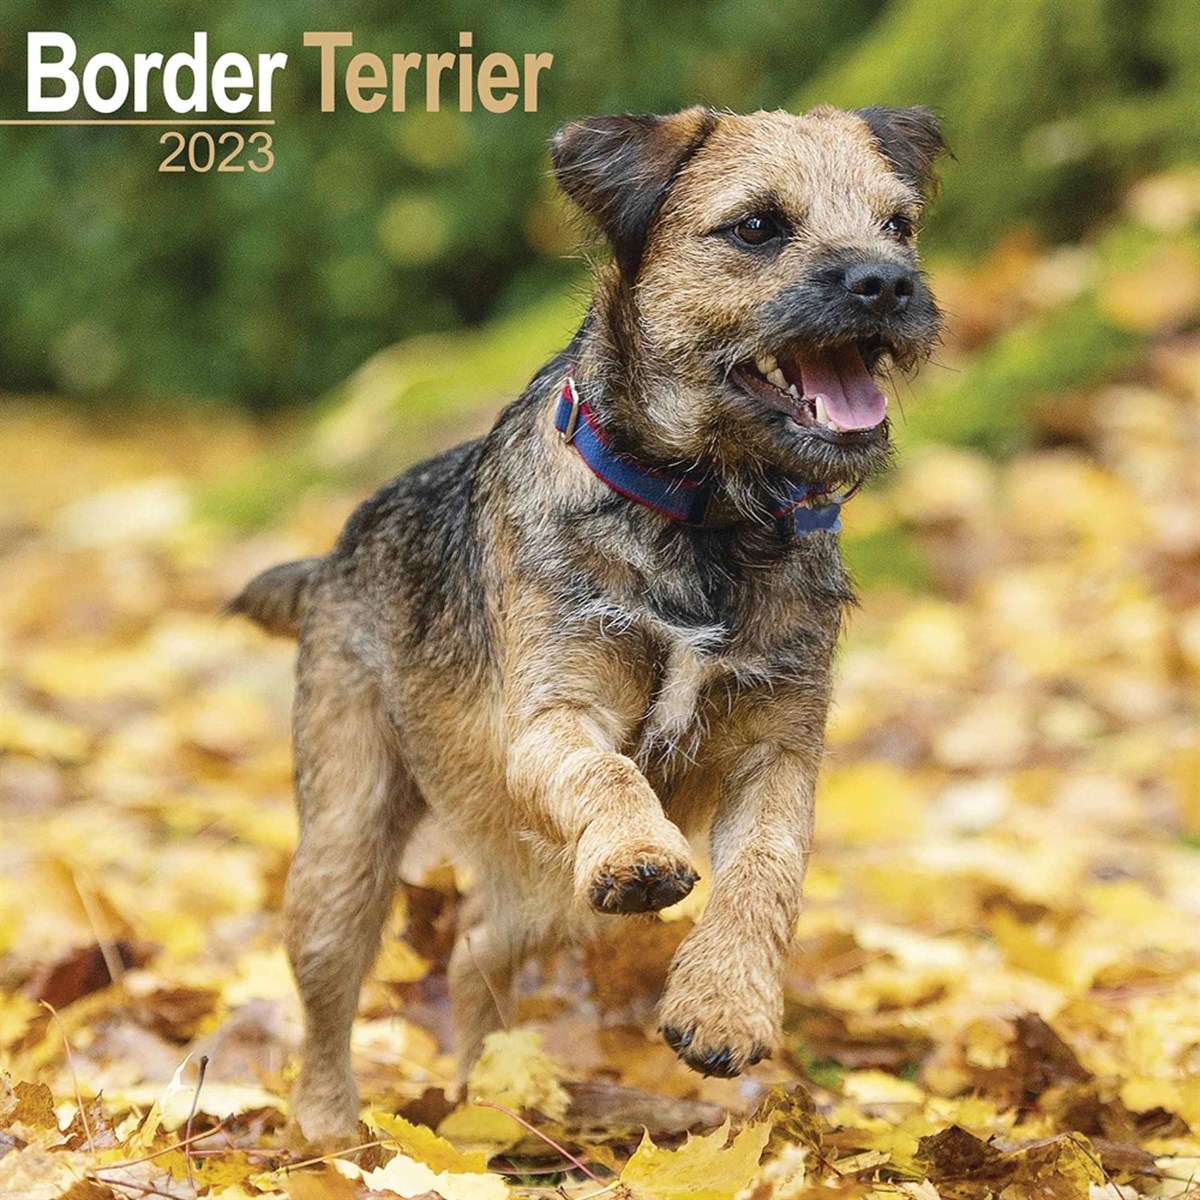 Border Terrier 2023 Calendars